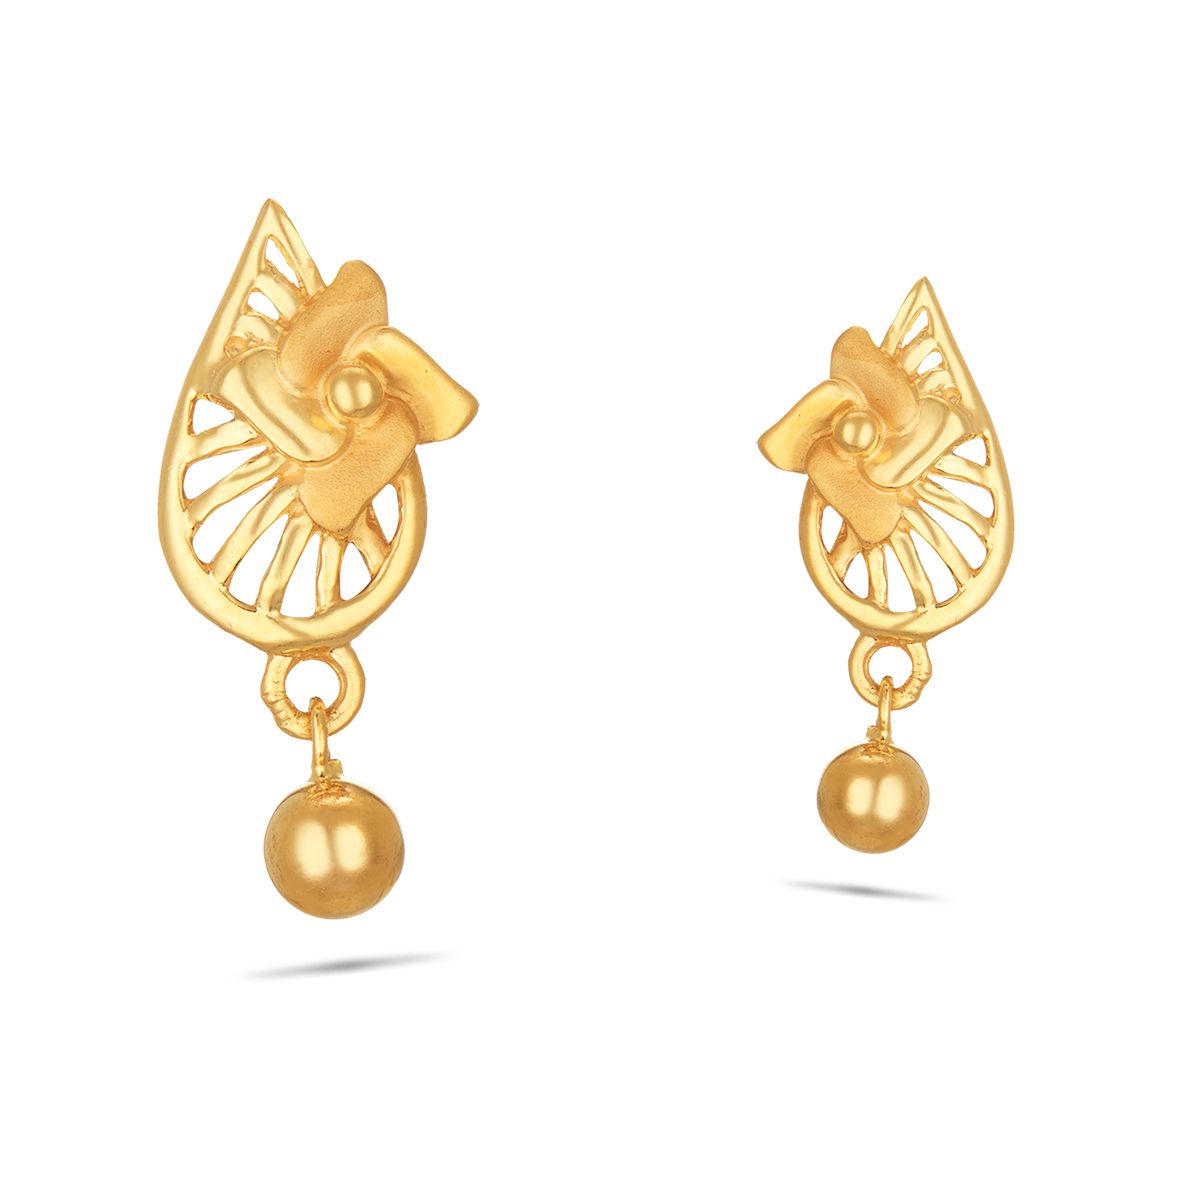 Daily wear gold earring | Gold earrings designs, Gold earrings, Designer  earrings